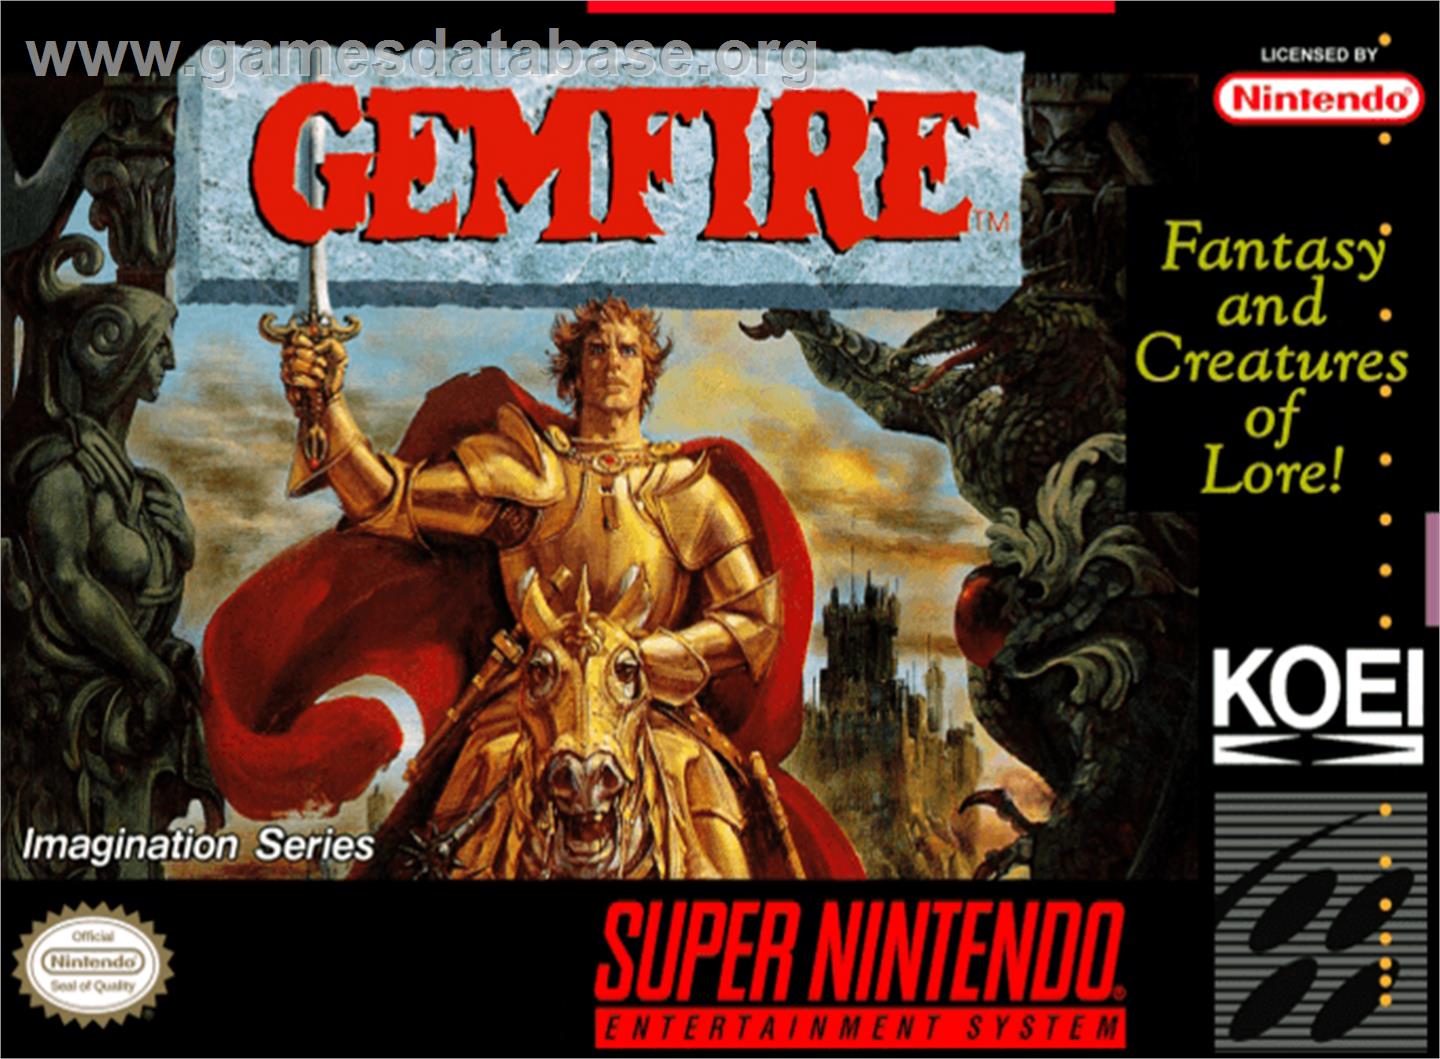 Gemfire - Nintendo SNES - Artwork - Box